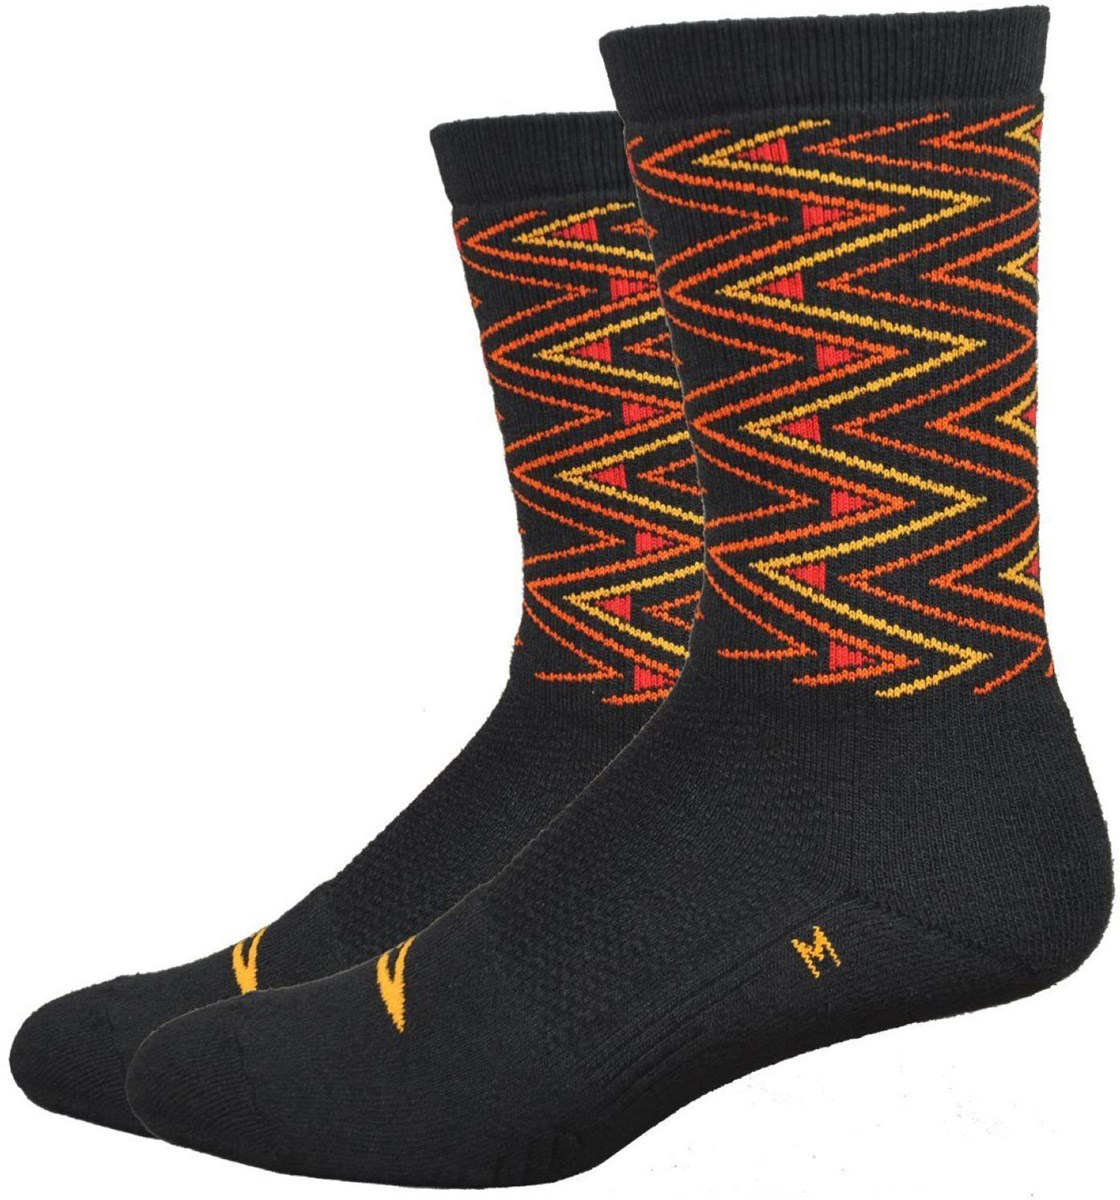 Defeet Thermeator 6" Socks product image